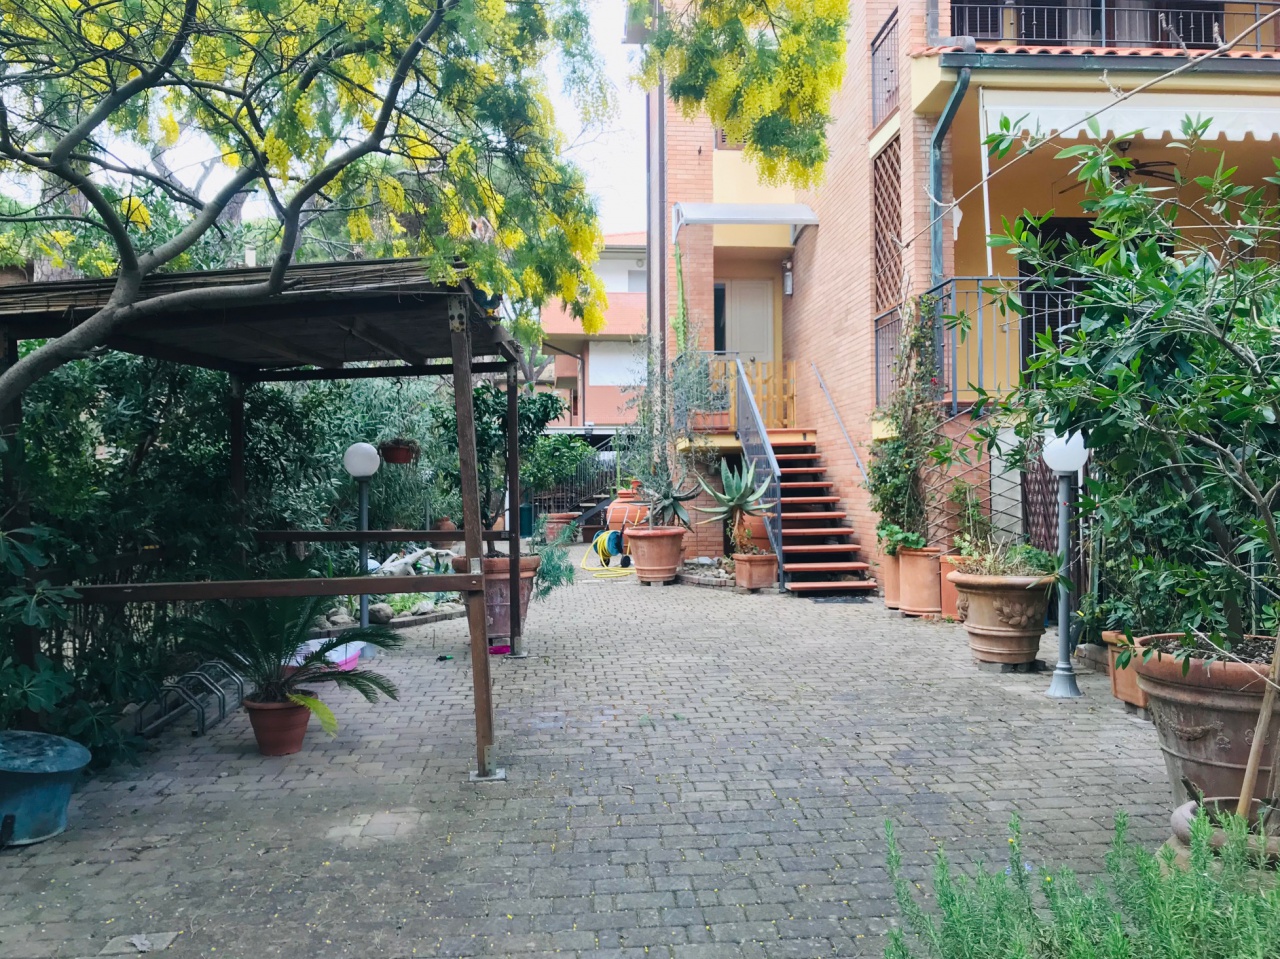 Casa indipendente con giardino in via della gorgona, Grosseto